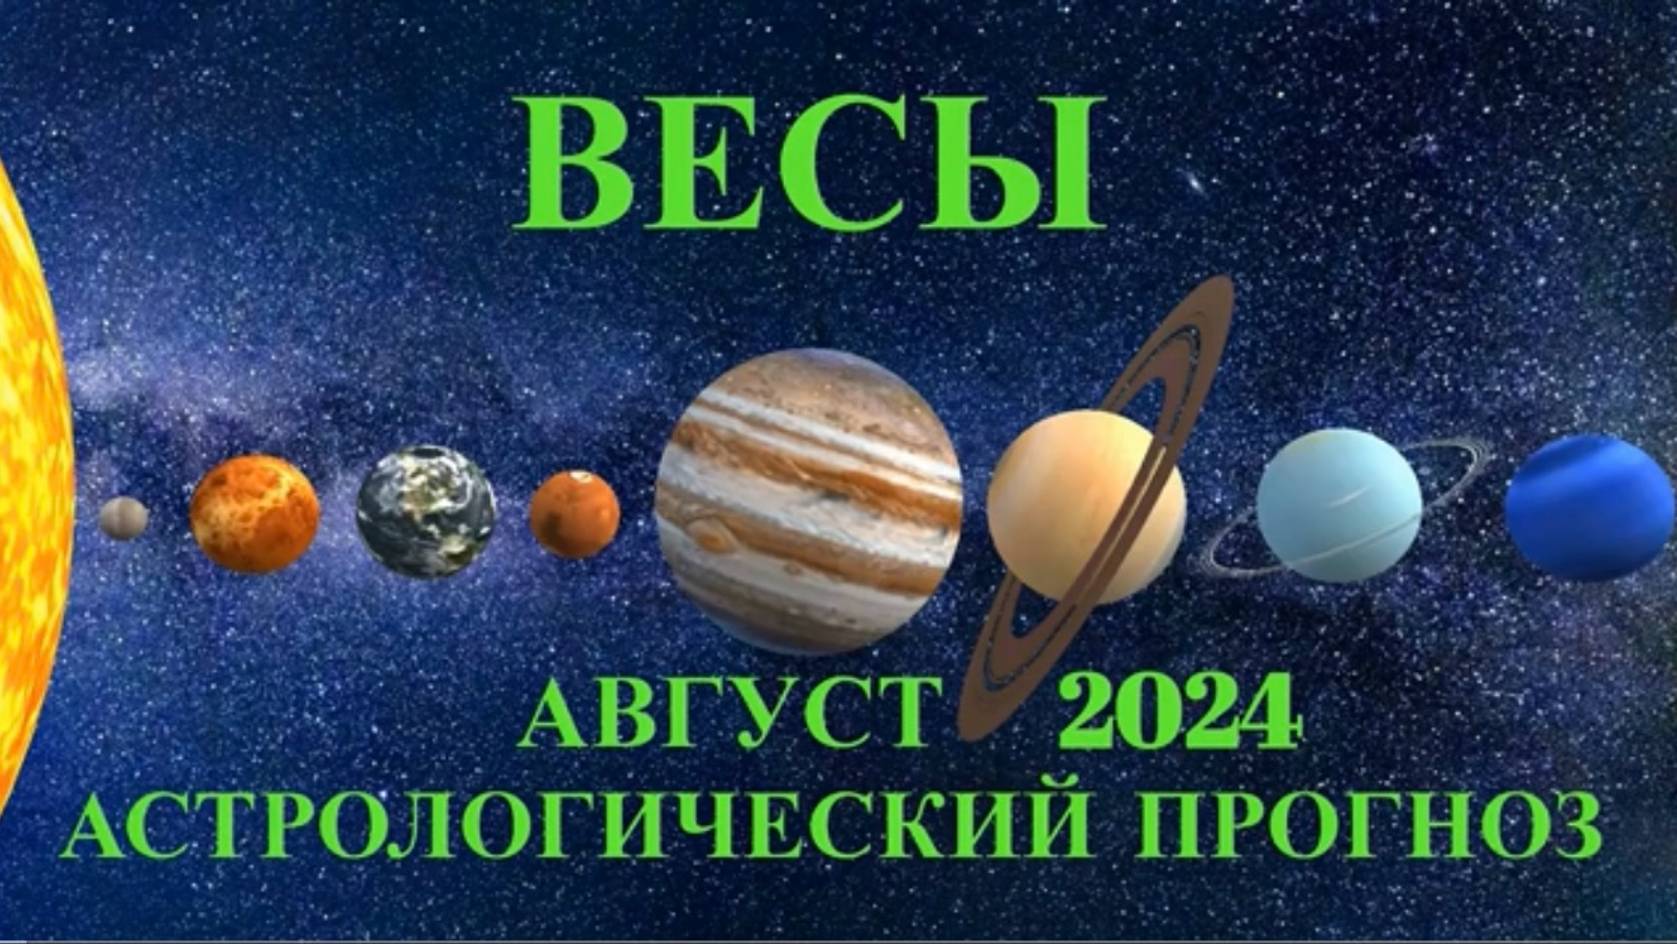 ВЕСЫ: "АСТРОЛОГИЧЕСКИЙ ПРОГНОЗ на АВГУСТ-2024!!!"